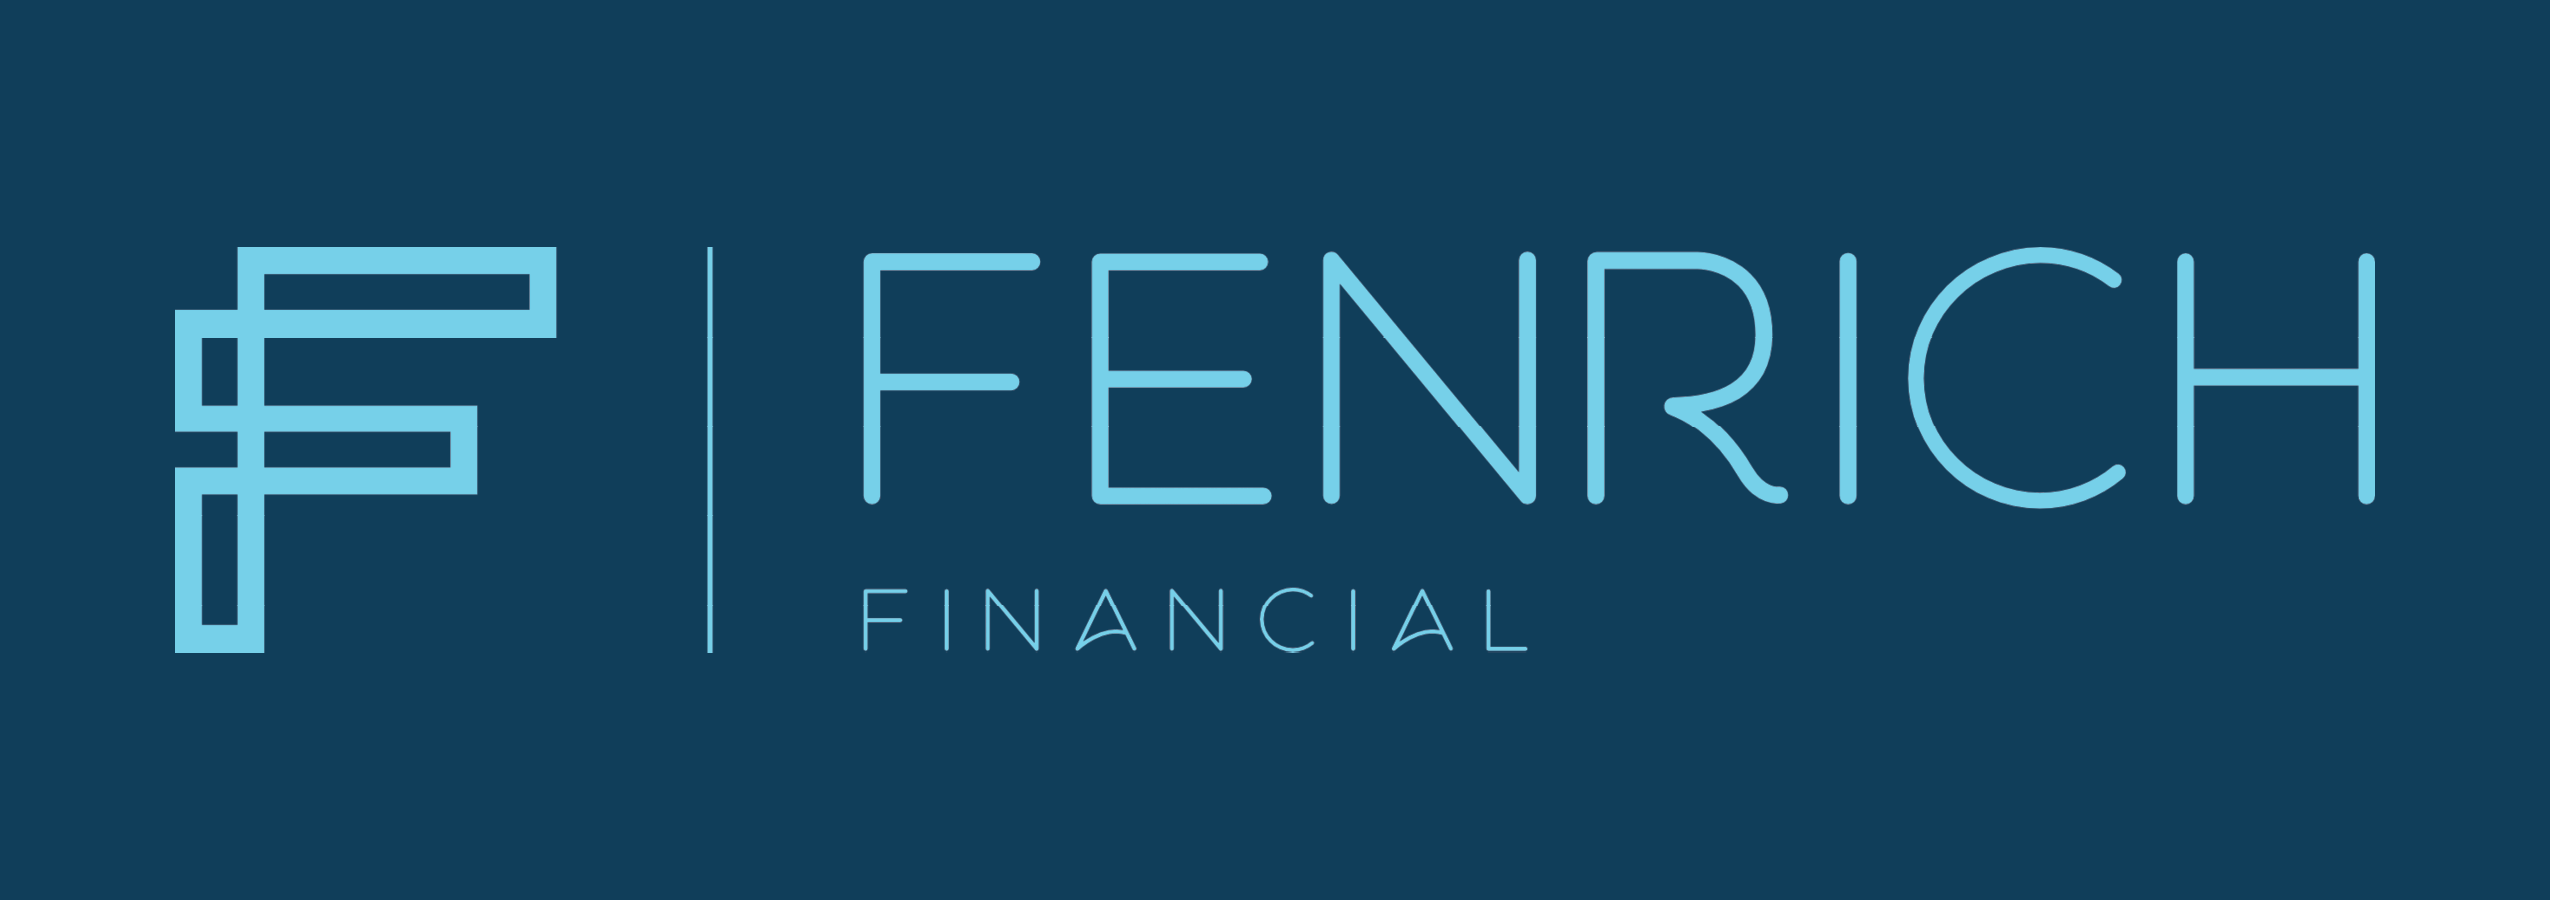 JP Fenrich Financial Services Inc